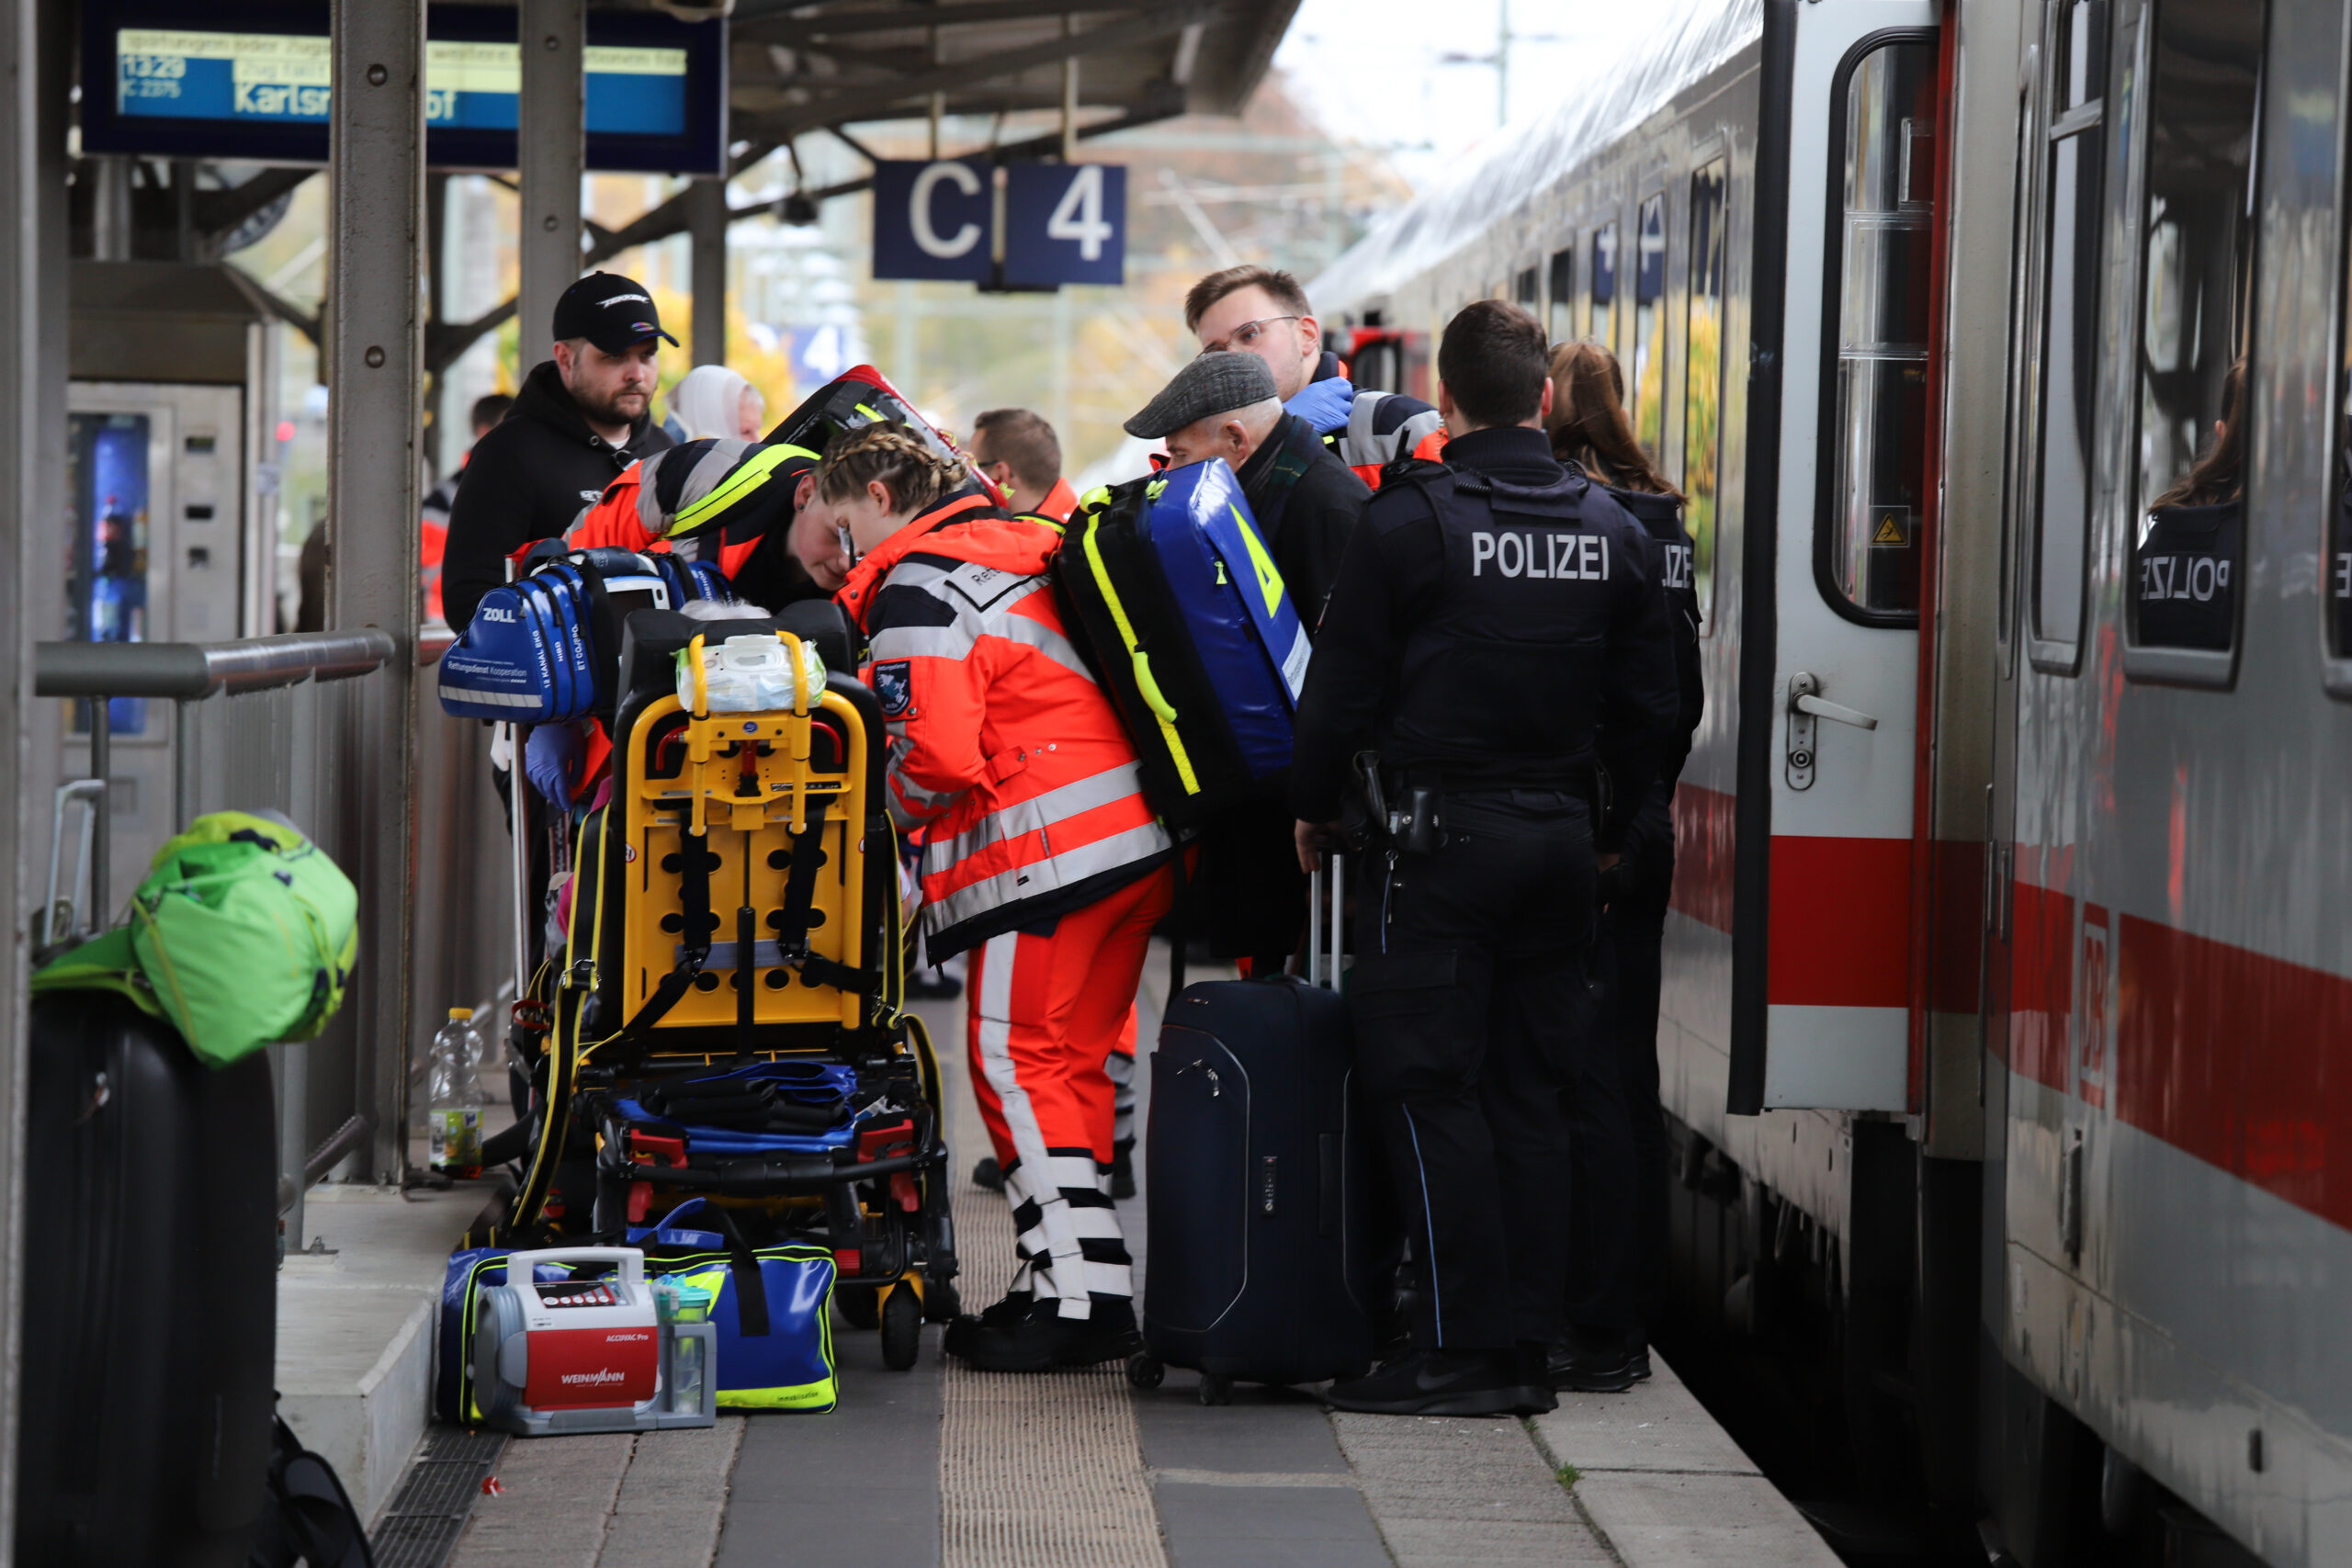 Rettungskräfte kümmern sich um eine verletzte Person. Polizeibeamte stehen neben dem in den Unfall verwickelten Zug.